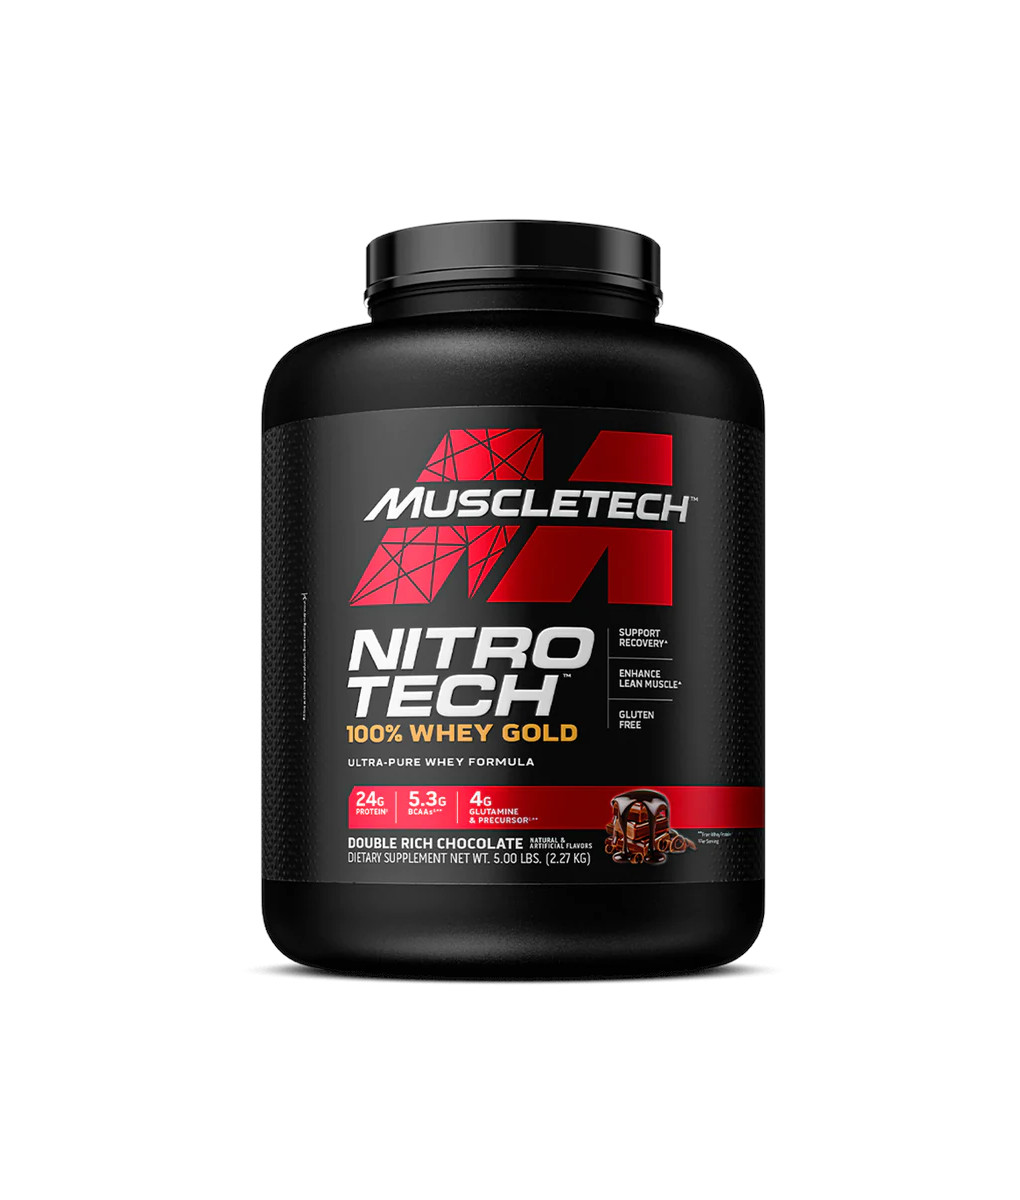 Muscletech NITRO TECH 100% WHEY GOLD